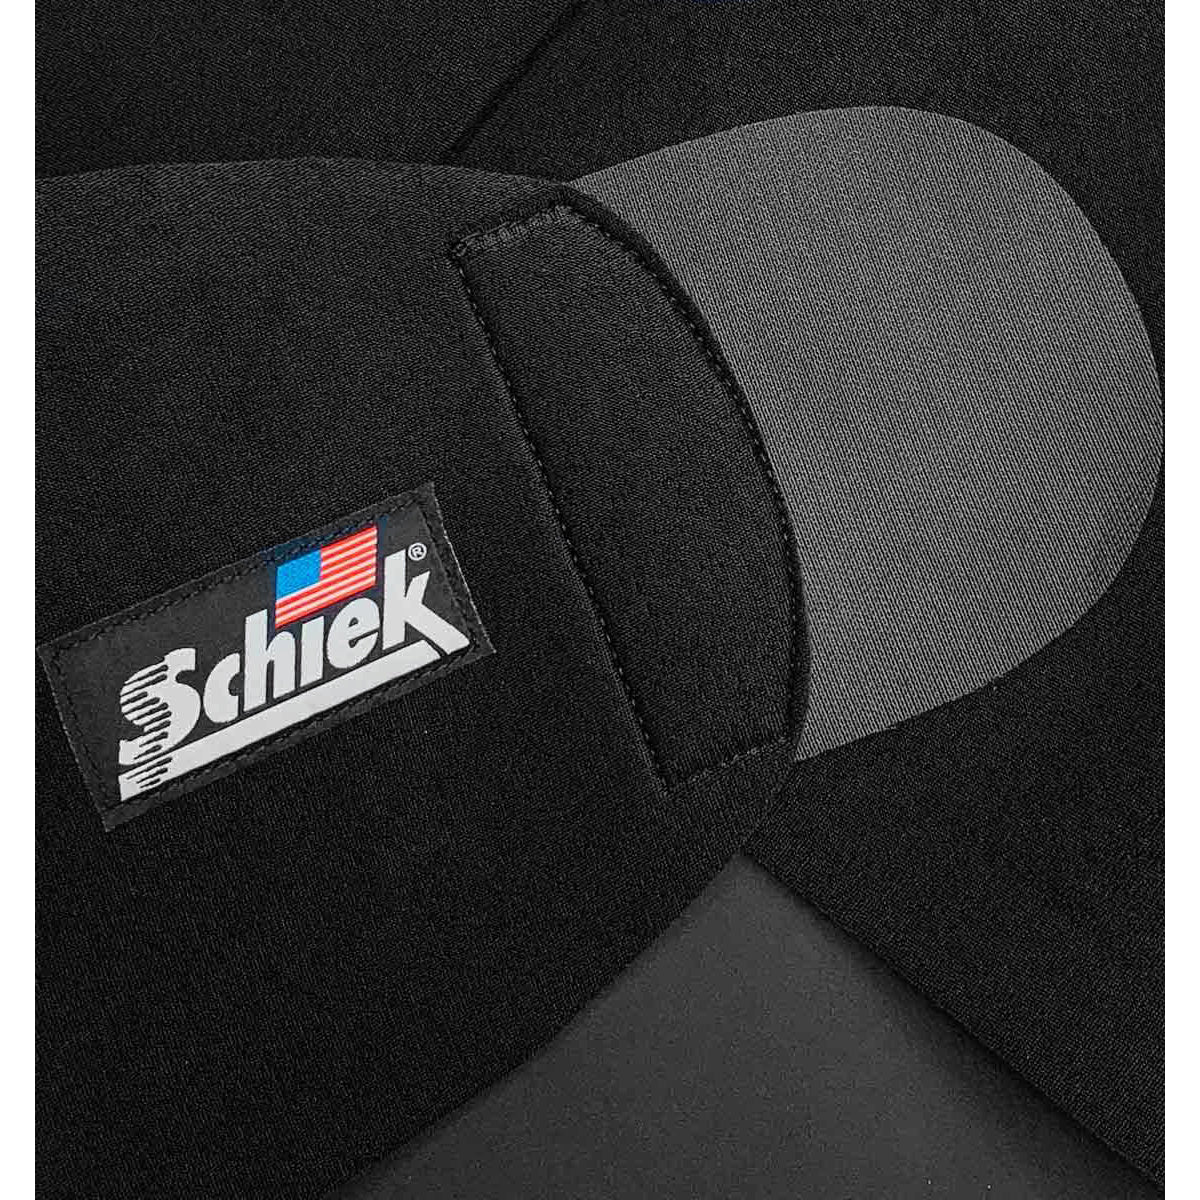 Schiek Sports Model 800 Waist Trimmer Belt - Black Schiek Sports